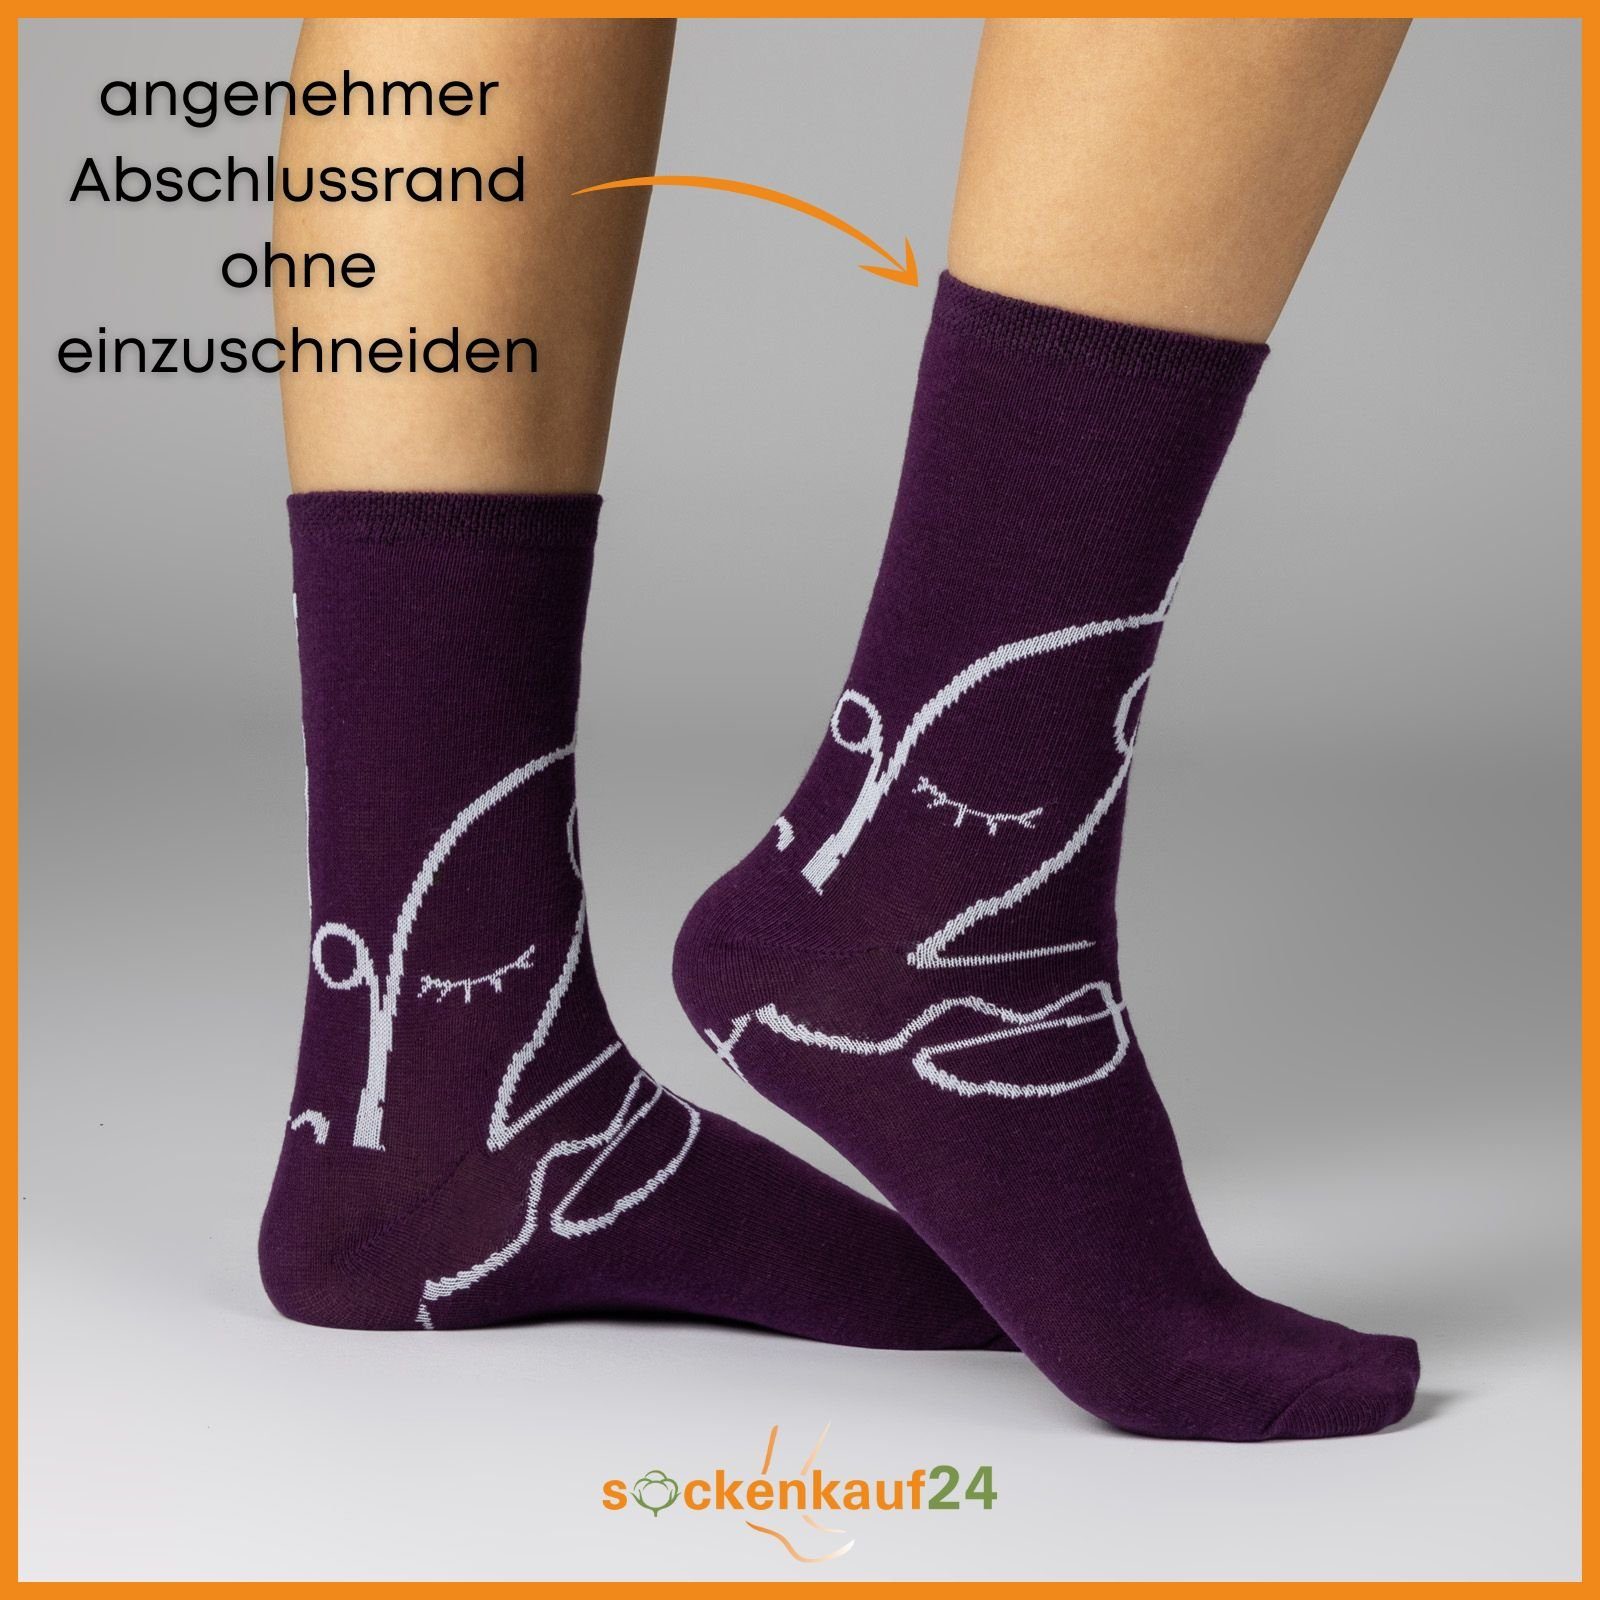 35-38) WP Basicsocken Herzen Socken Baumwolle sockenkauf24 Streifen Maritim Damen Mehrfarbig Punkte (34909, 10 Paar